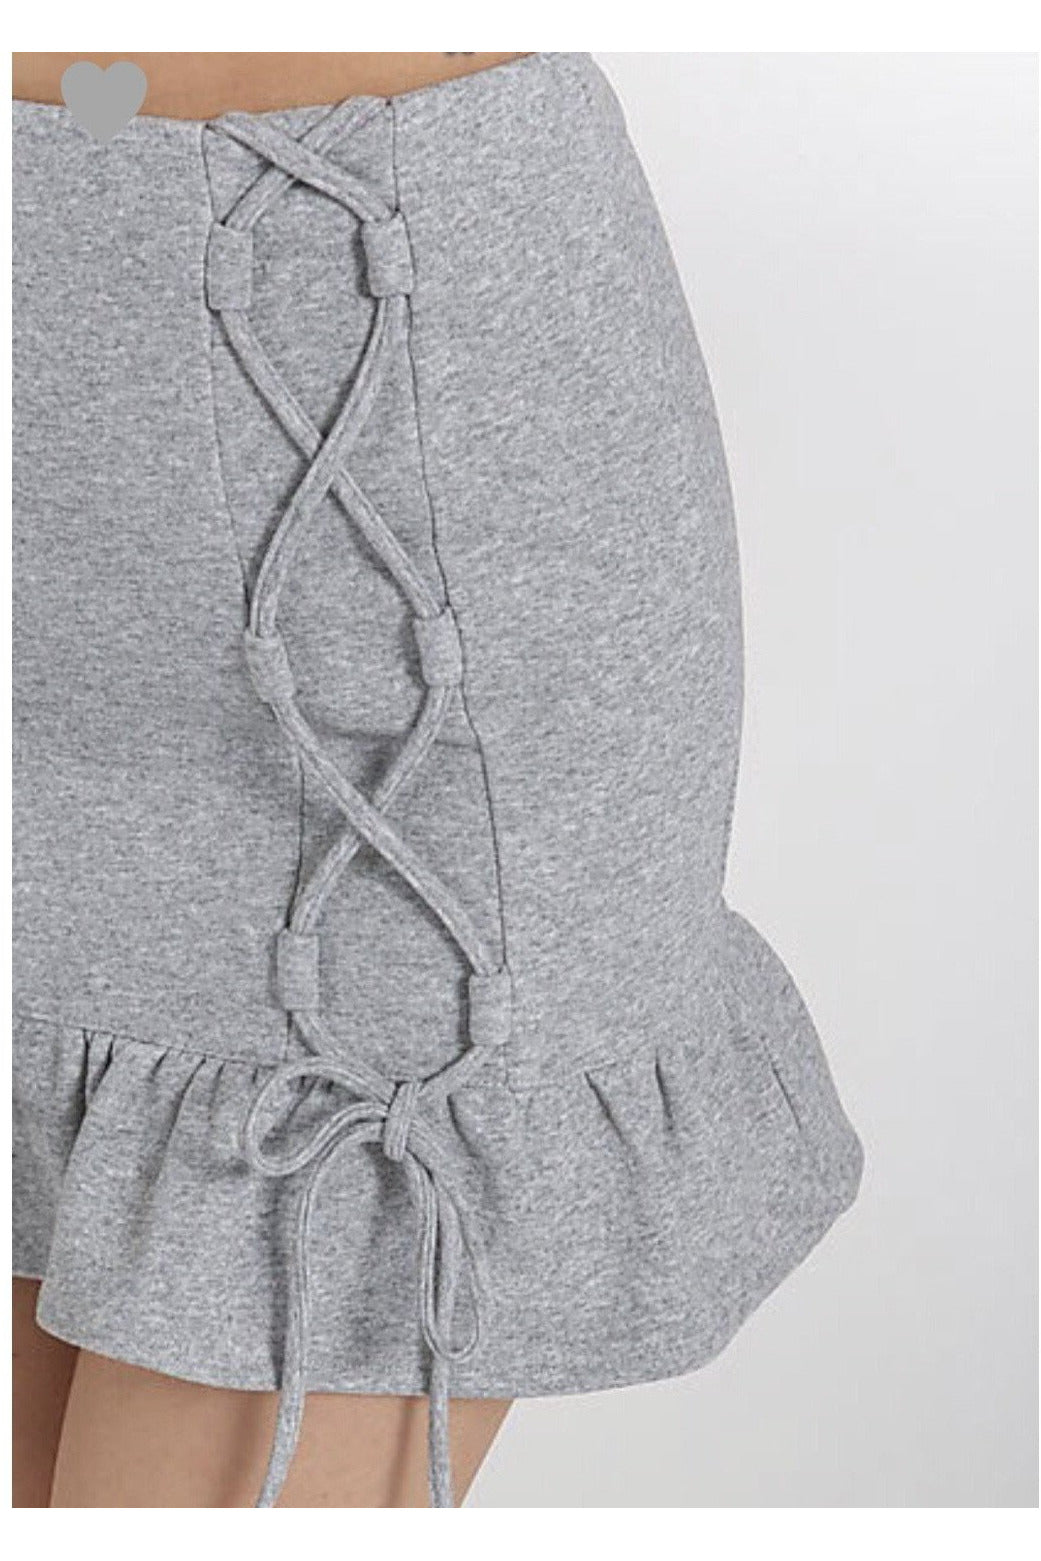 Grey Tie Up Ruffle Mini Skirt